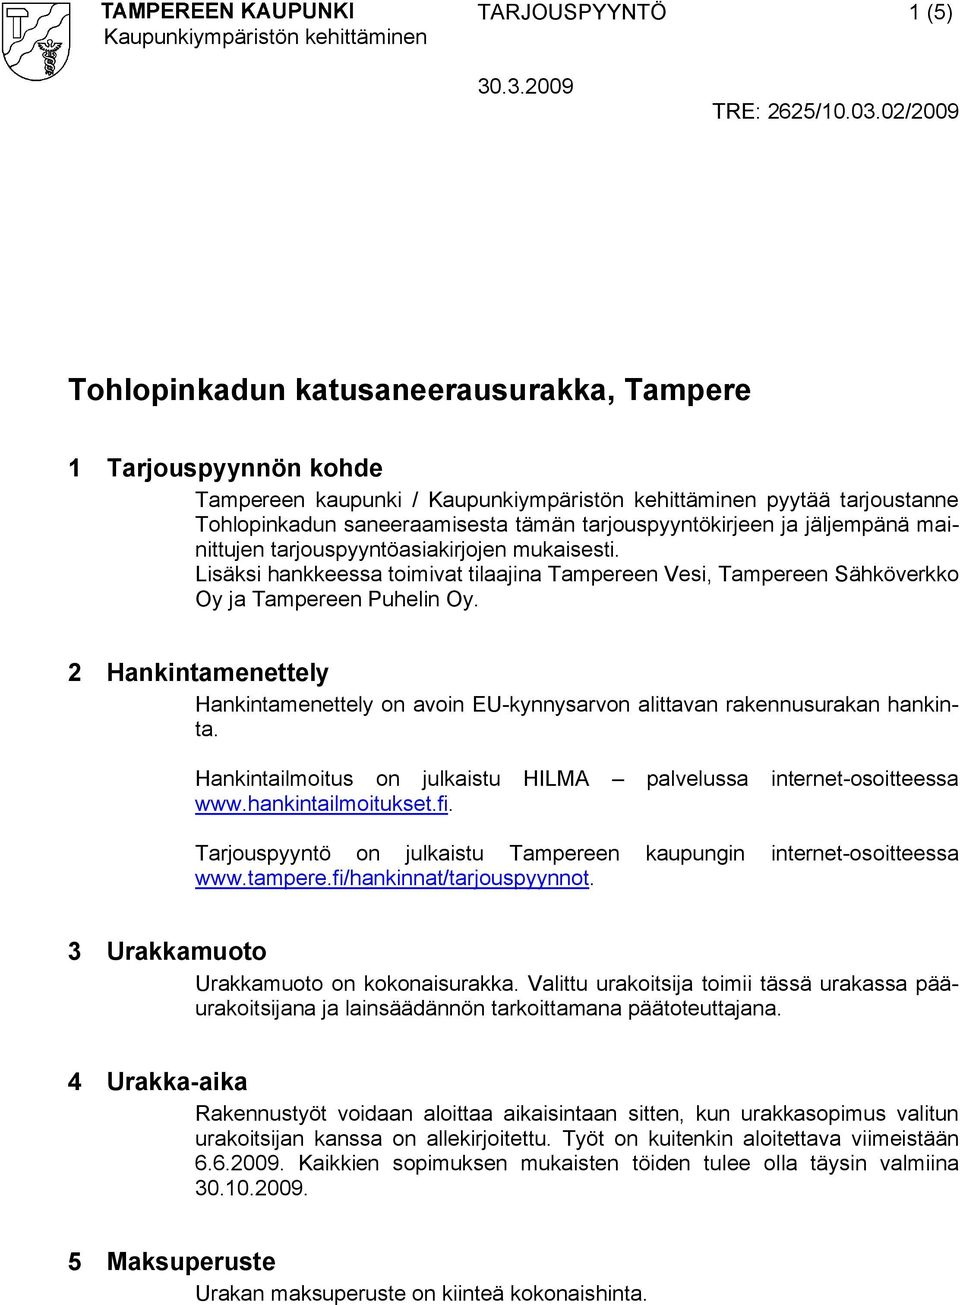 2 Hankintamenettely Hankintamenettely on avoin EU kynnysarvon alittavan rakennusurakan hankinta. Hankintailmoitus on julkaistu HILMA palvelussa internet osoitteessa www.hankintailmoitukset.fi.